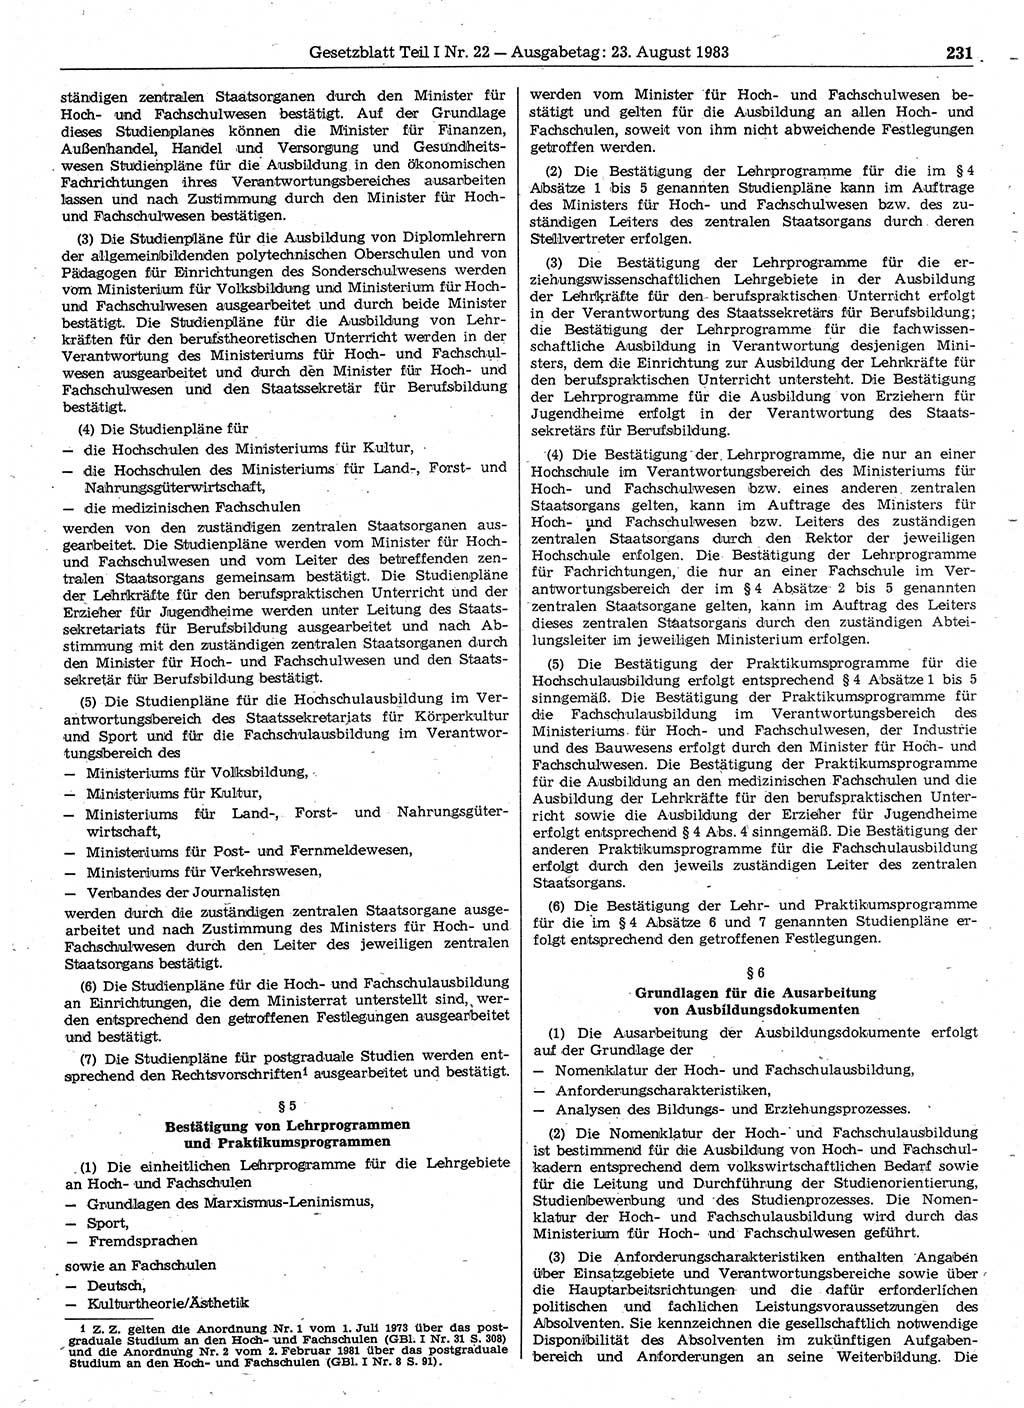 Gesetzblatt (GBl.) der Deutschen Demokratischen Republik (DDR) Teil Ⅰ 1983, Seite 231 (GBl. DDR Ⅰ 1983, S. 231)